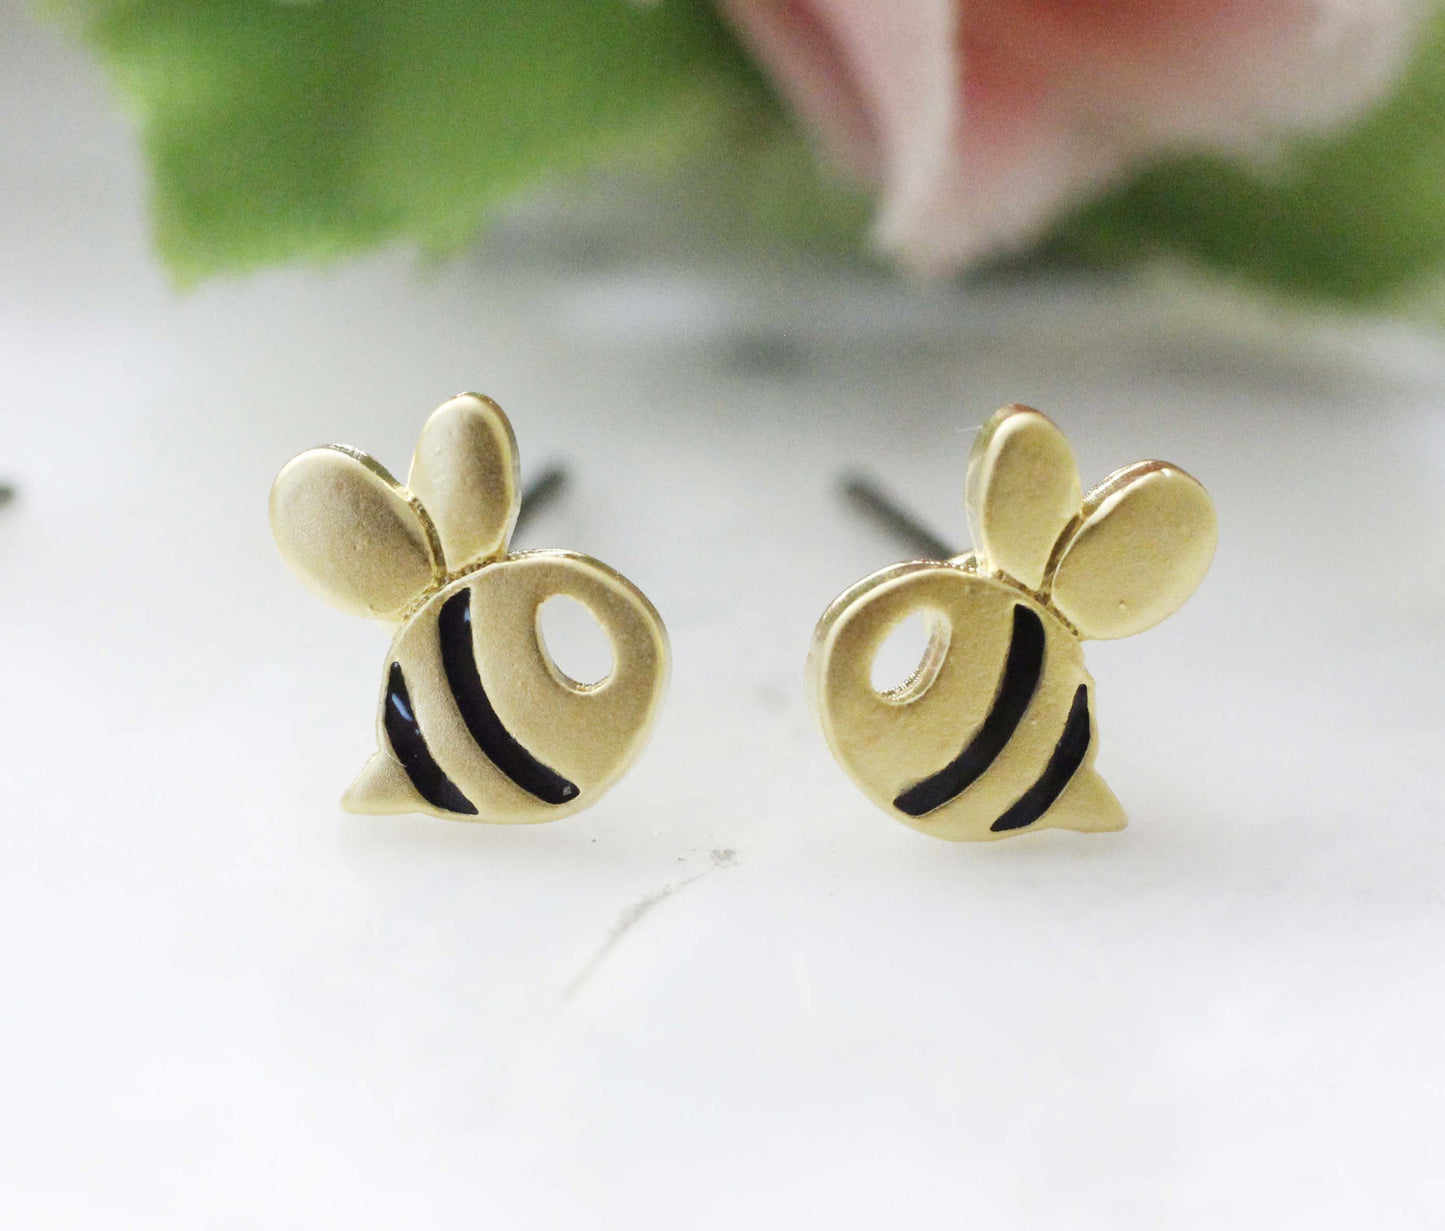 Cute Honeybee stud earrings, Bee earrings in 2 colors